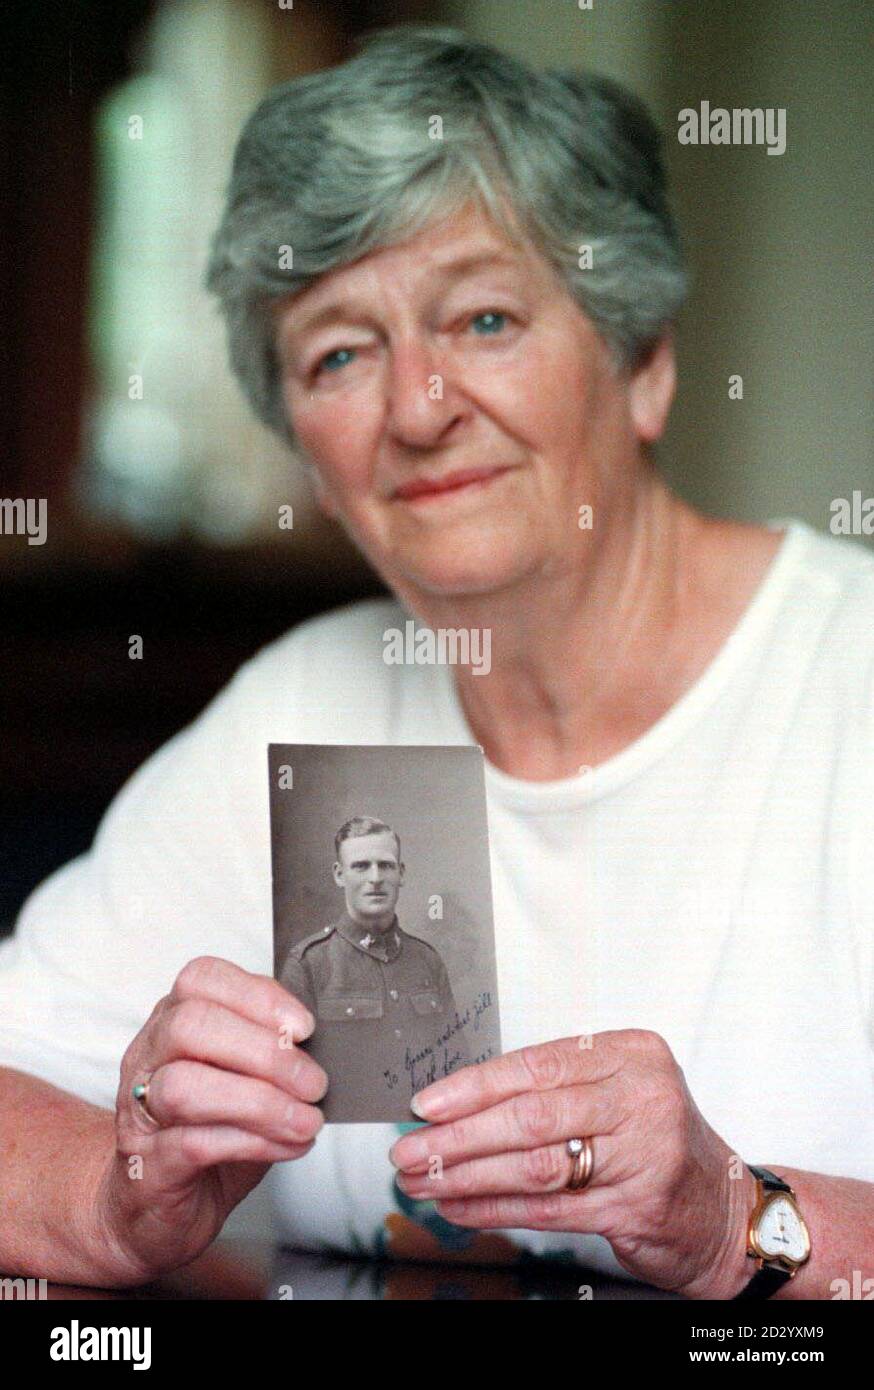 Frau Shiela Filbrook (68) hat ein Foto ihres Bruders Sgt Lawerence Howes, der am 1944. September in Oosterbeek, Holland, getötet wurde. Seine Leiche wurde vor kurzem gefunden und identifiziert und wird in naher Zukunft mit vollen militärischen Ehren begraben werden. Sheila Philbrooks ältester Bruder hatte ihn seit mehr als 50 Jahren am falschen Grab betrauert, hieß es gestern (Freitag). Sergeant Laurence Howes war ein Segelflieger, der im September 1944 bei den epischen Arnhem-Landungen in Holland starb. Siehe PA Story DEFENSE Graves. Foto PA Crown Copywrite, Media Ops, HQ Land Command, Wilton, Salisbur Stockfoto